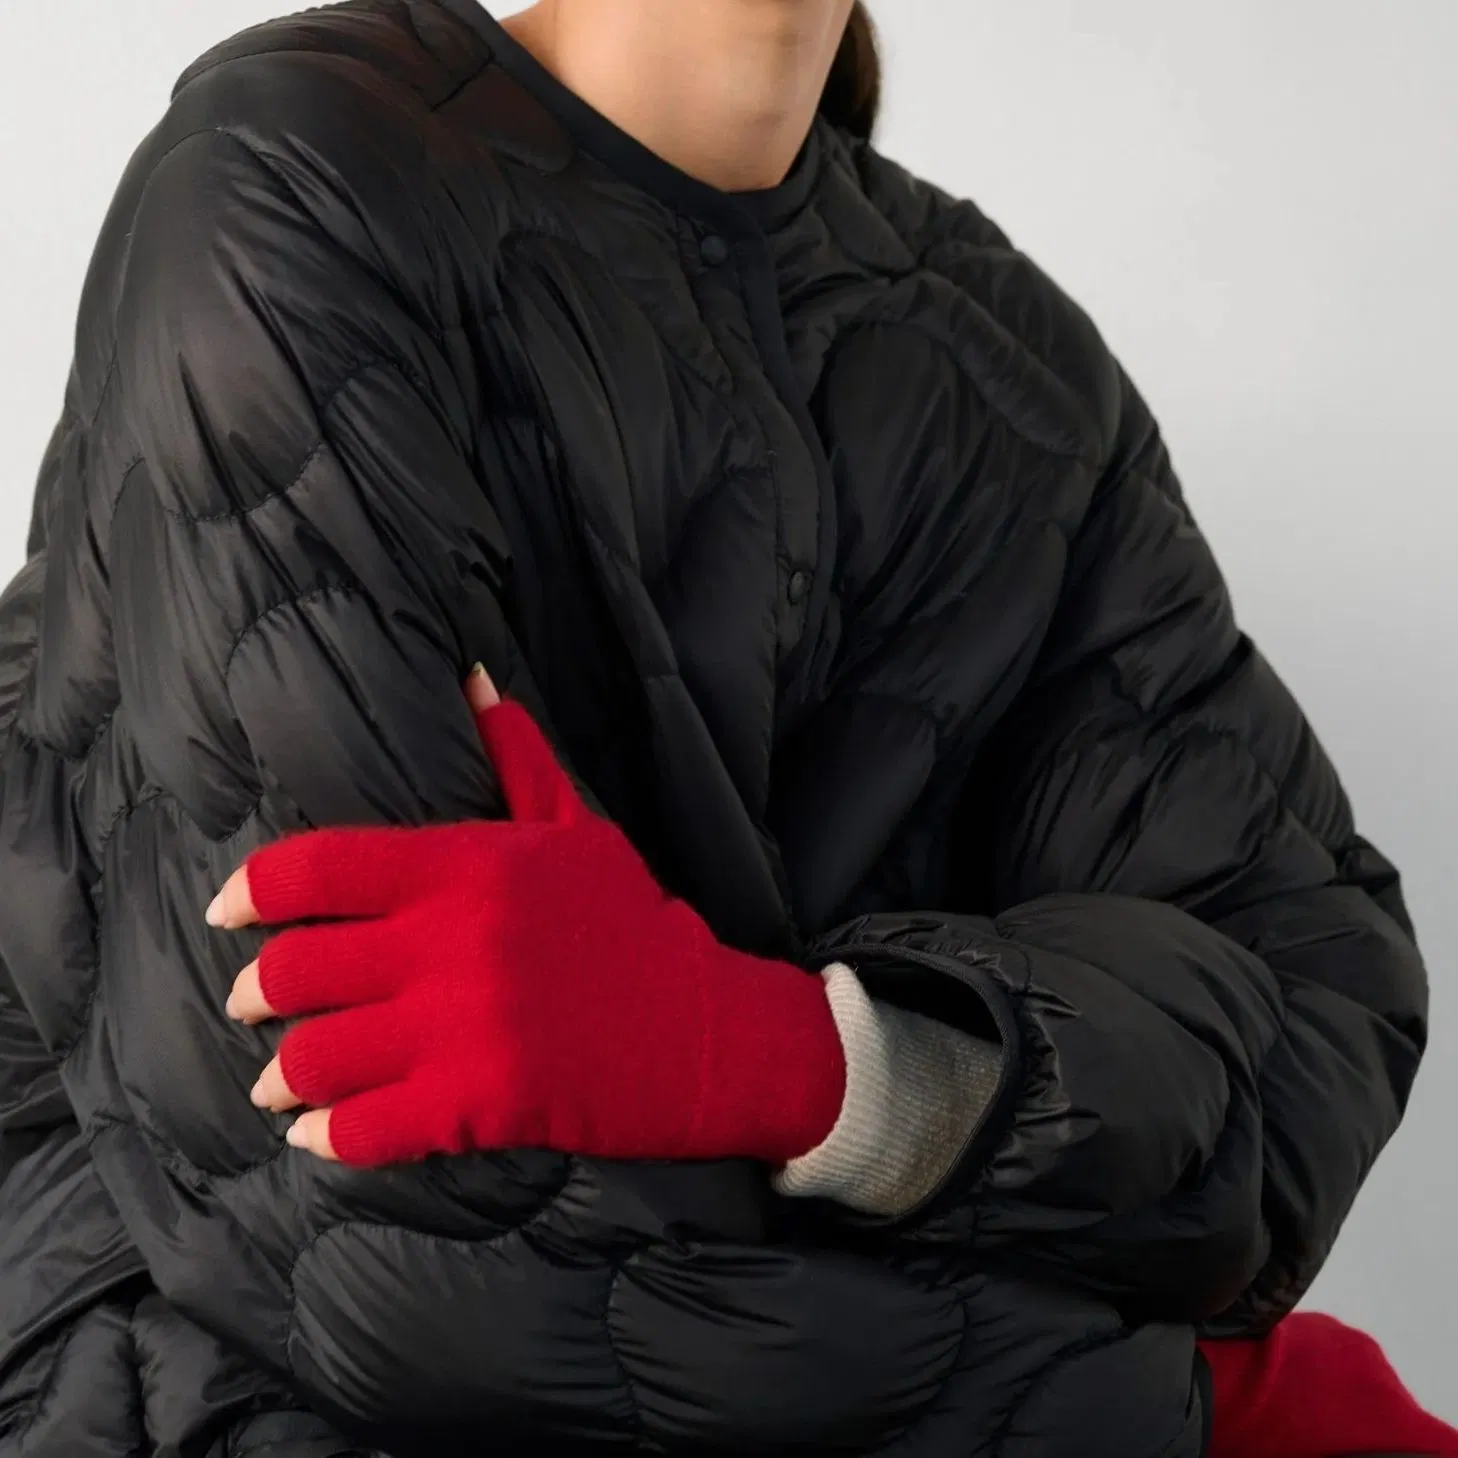 100% Kaschmir Strickmode Fingerlose Handschuhe Bekleidung Accessoires